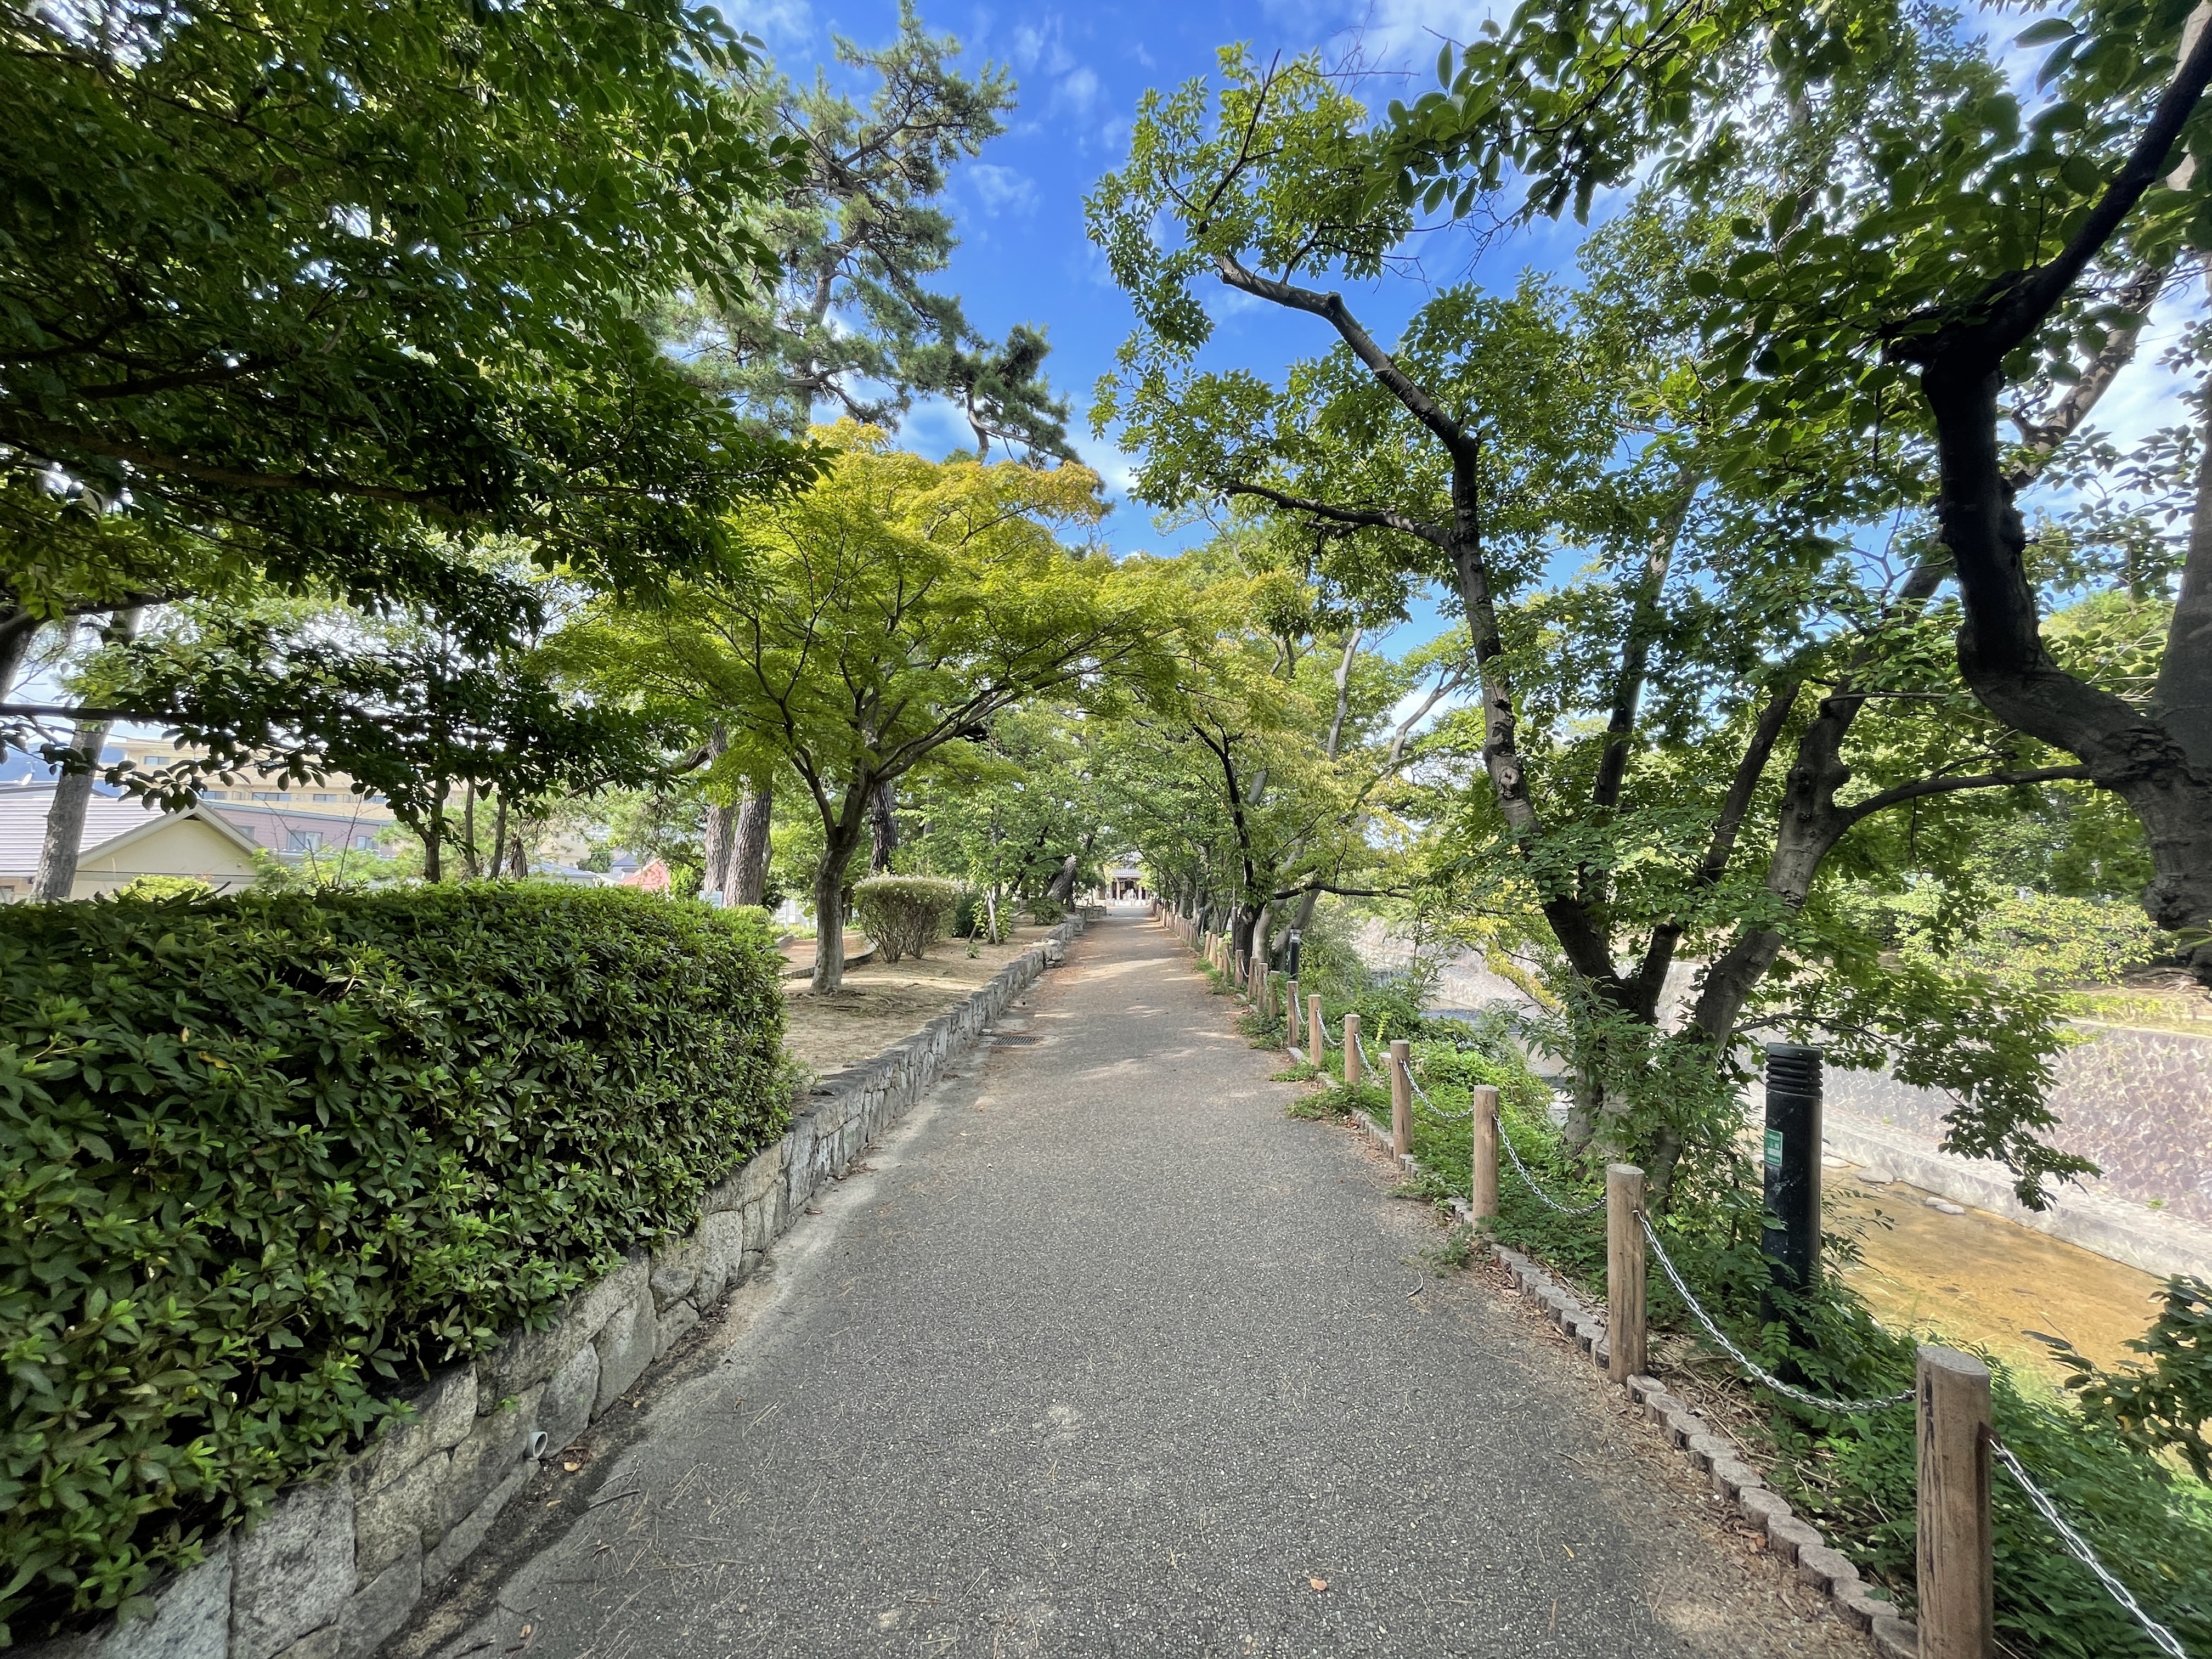 有名なさくら並木で春に賑わう”夙川フラワーロード”<br />
大きな桜や松の木が日影を作ってくれて、<br />
自然豊かで涼やかな場所になっています。<br />
お散歩される方やジョギングされる方、<br />
毎日の通勤通学コースにされていらっしゃる方など<br />
地域の皆様に親しまれています。